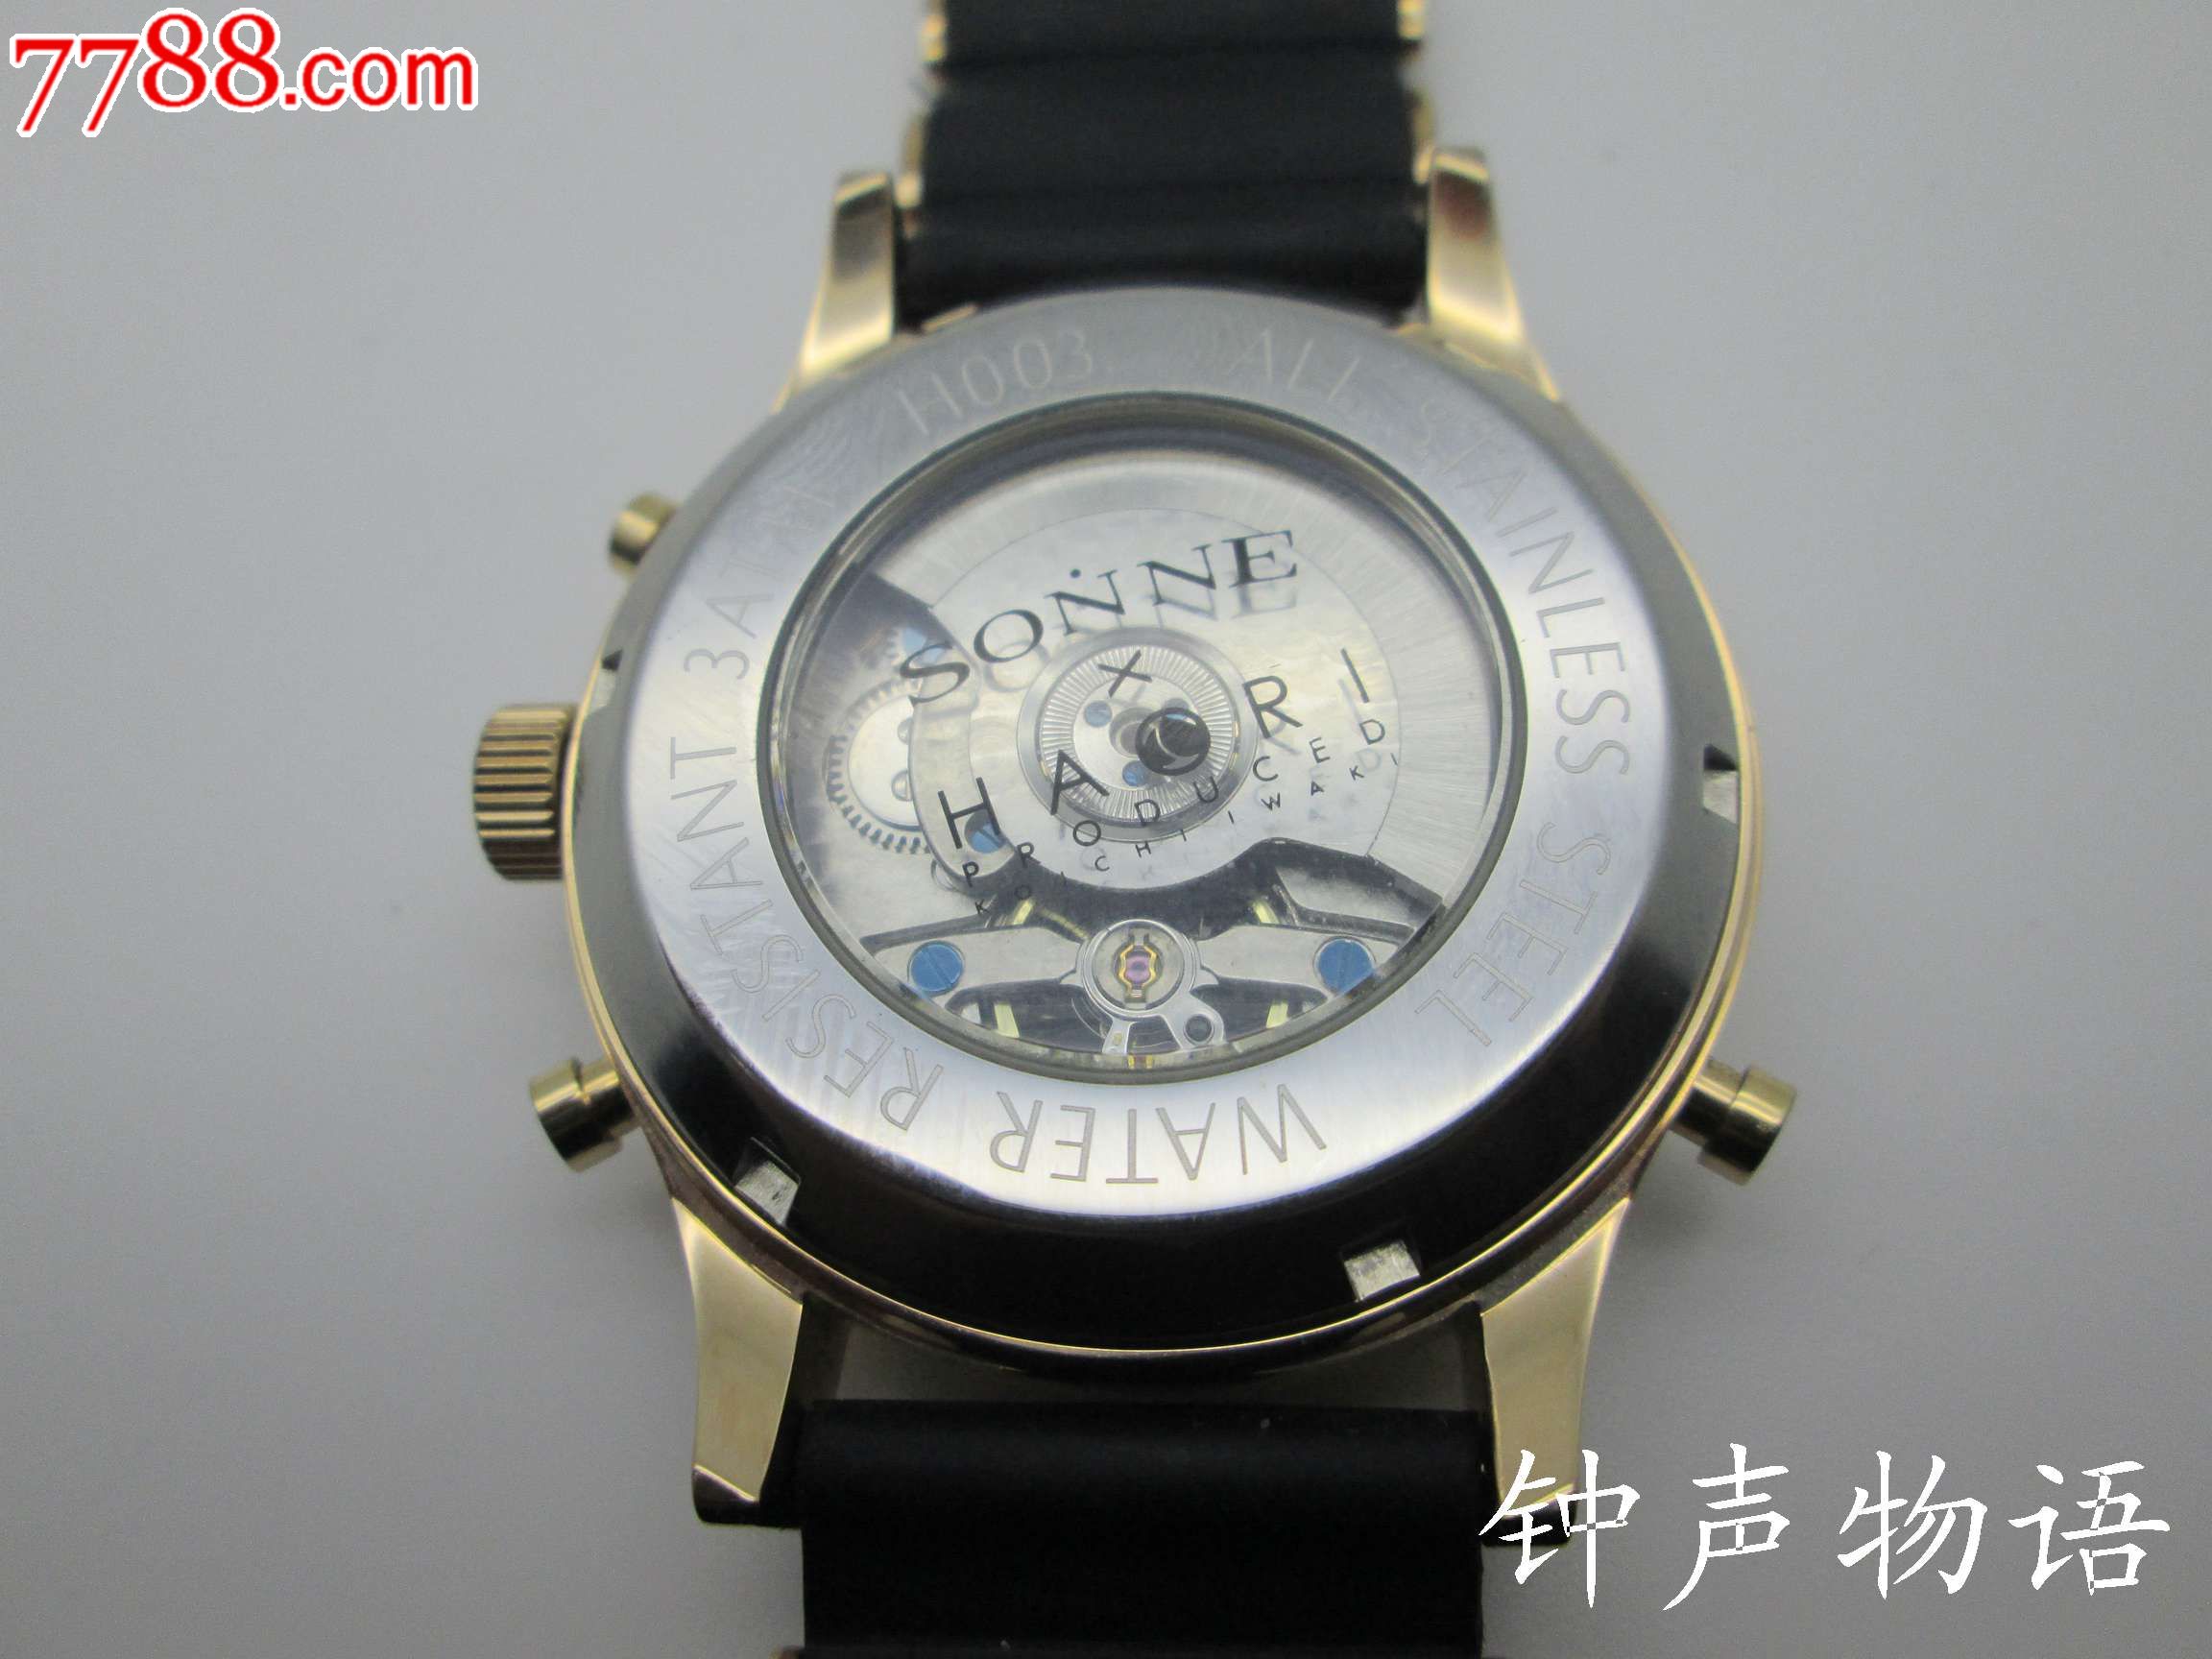 德国索纳尔大表,手表/腕表【钟声物语】_第7张_7788手表收藏